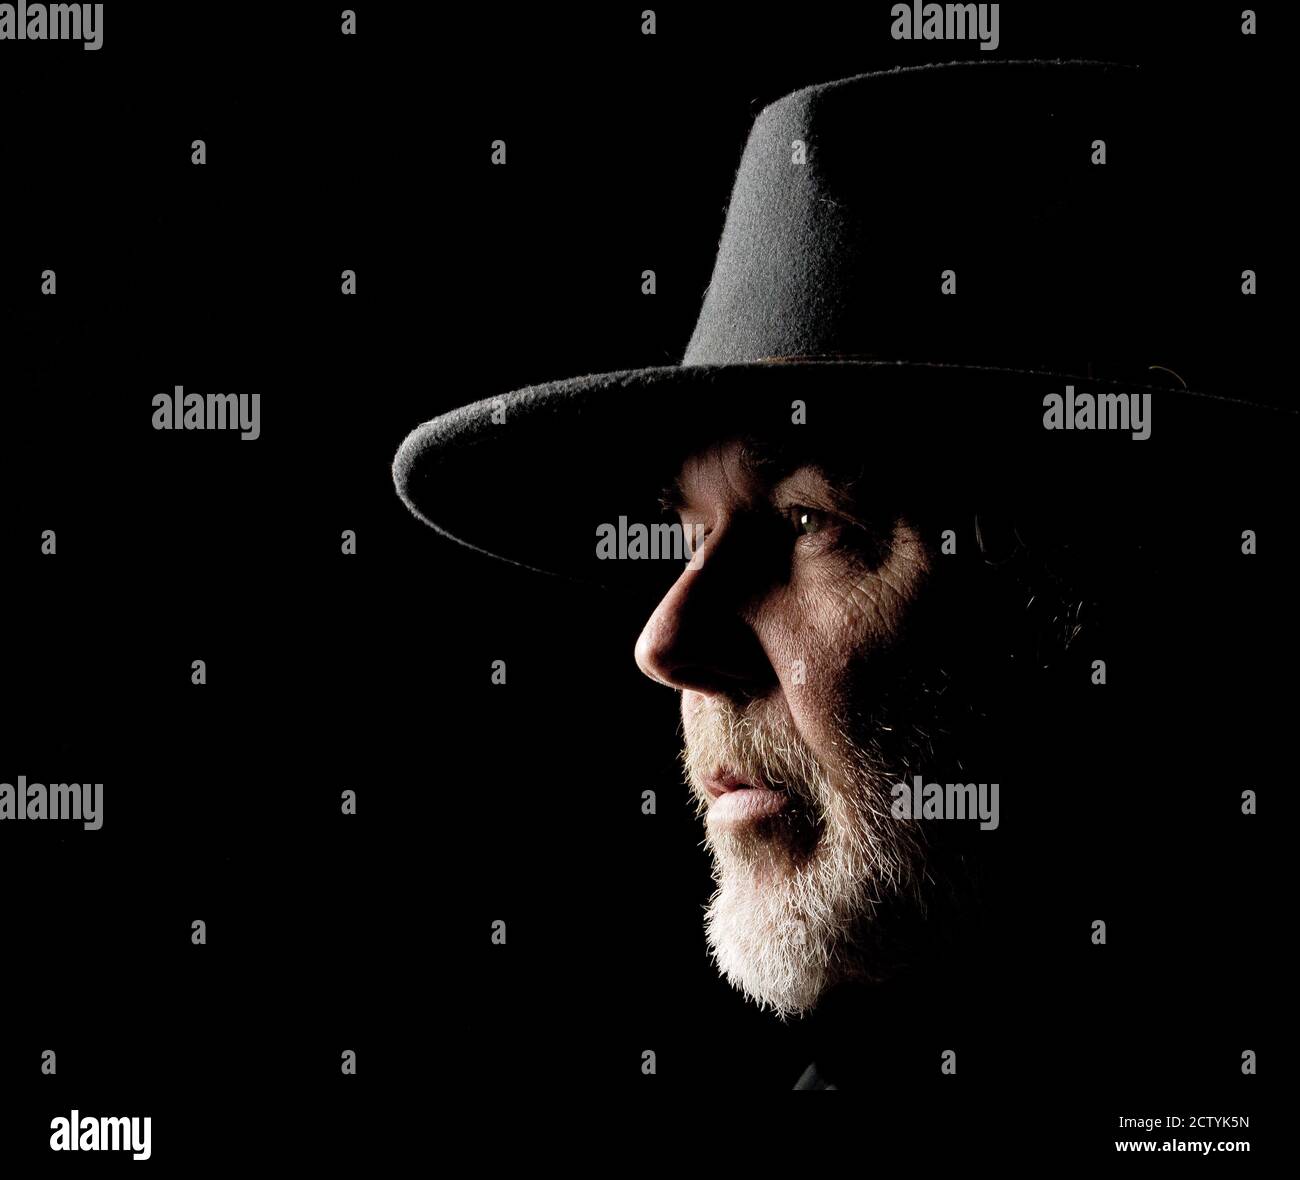 Ritratto in primo piano di un uomo di mezza età in un cappello occidentale largo-brimmed su uno sfondo scuro Foto Stock